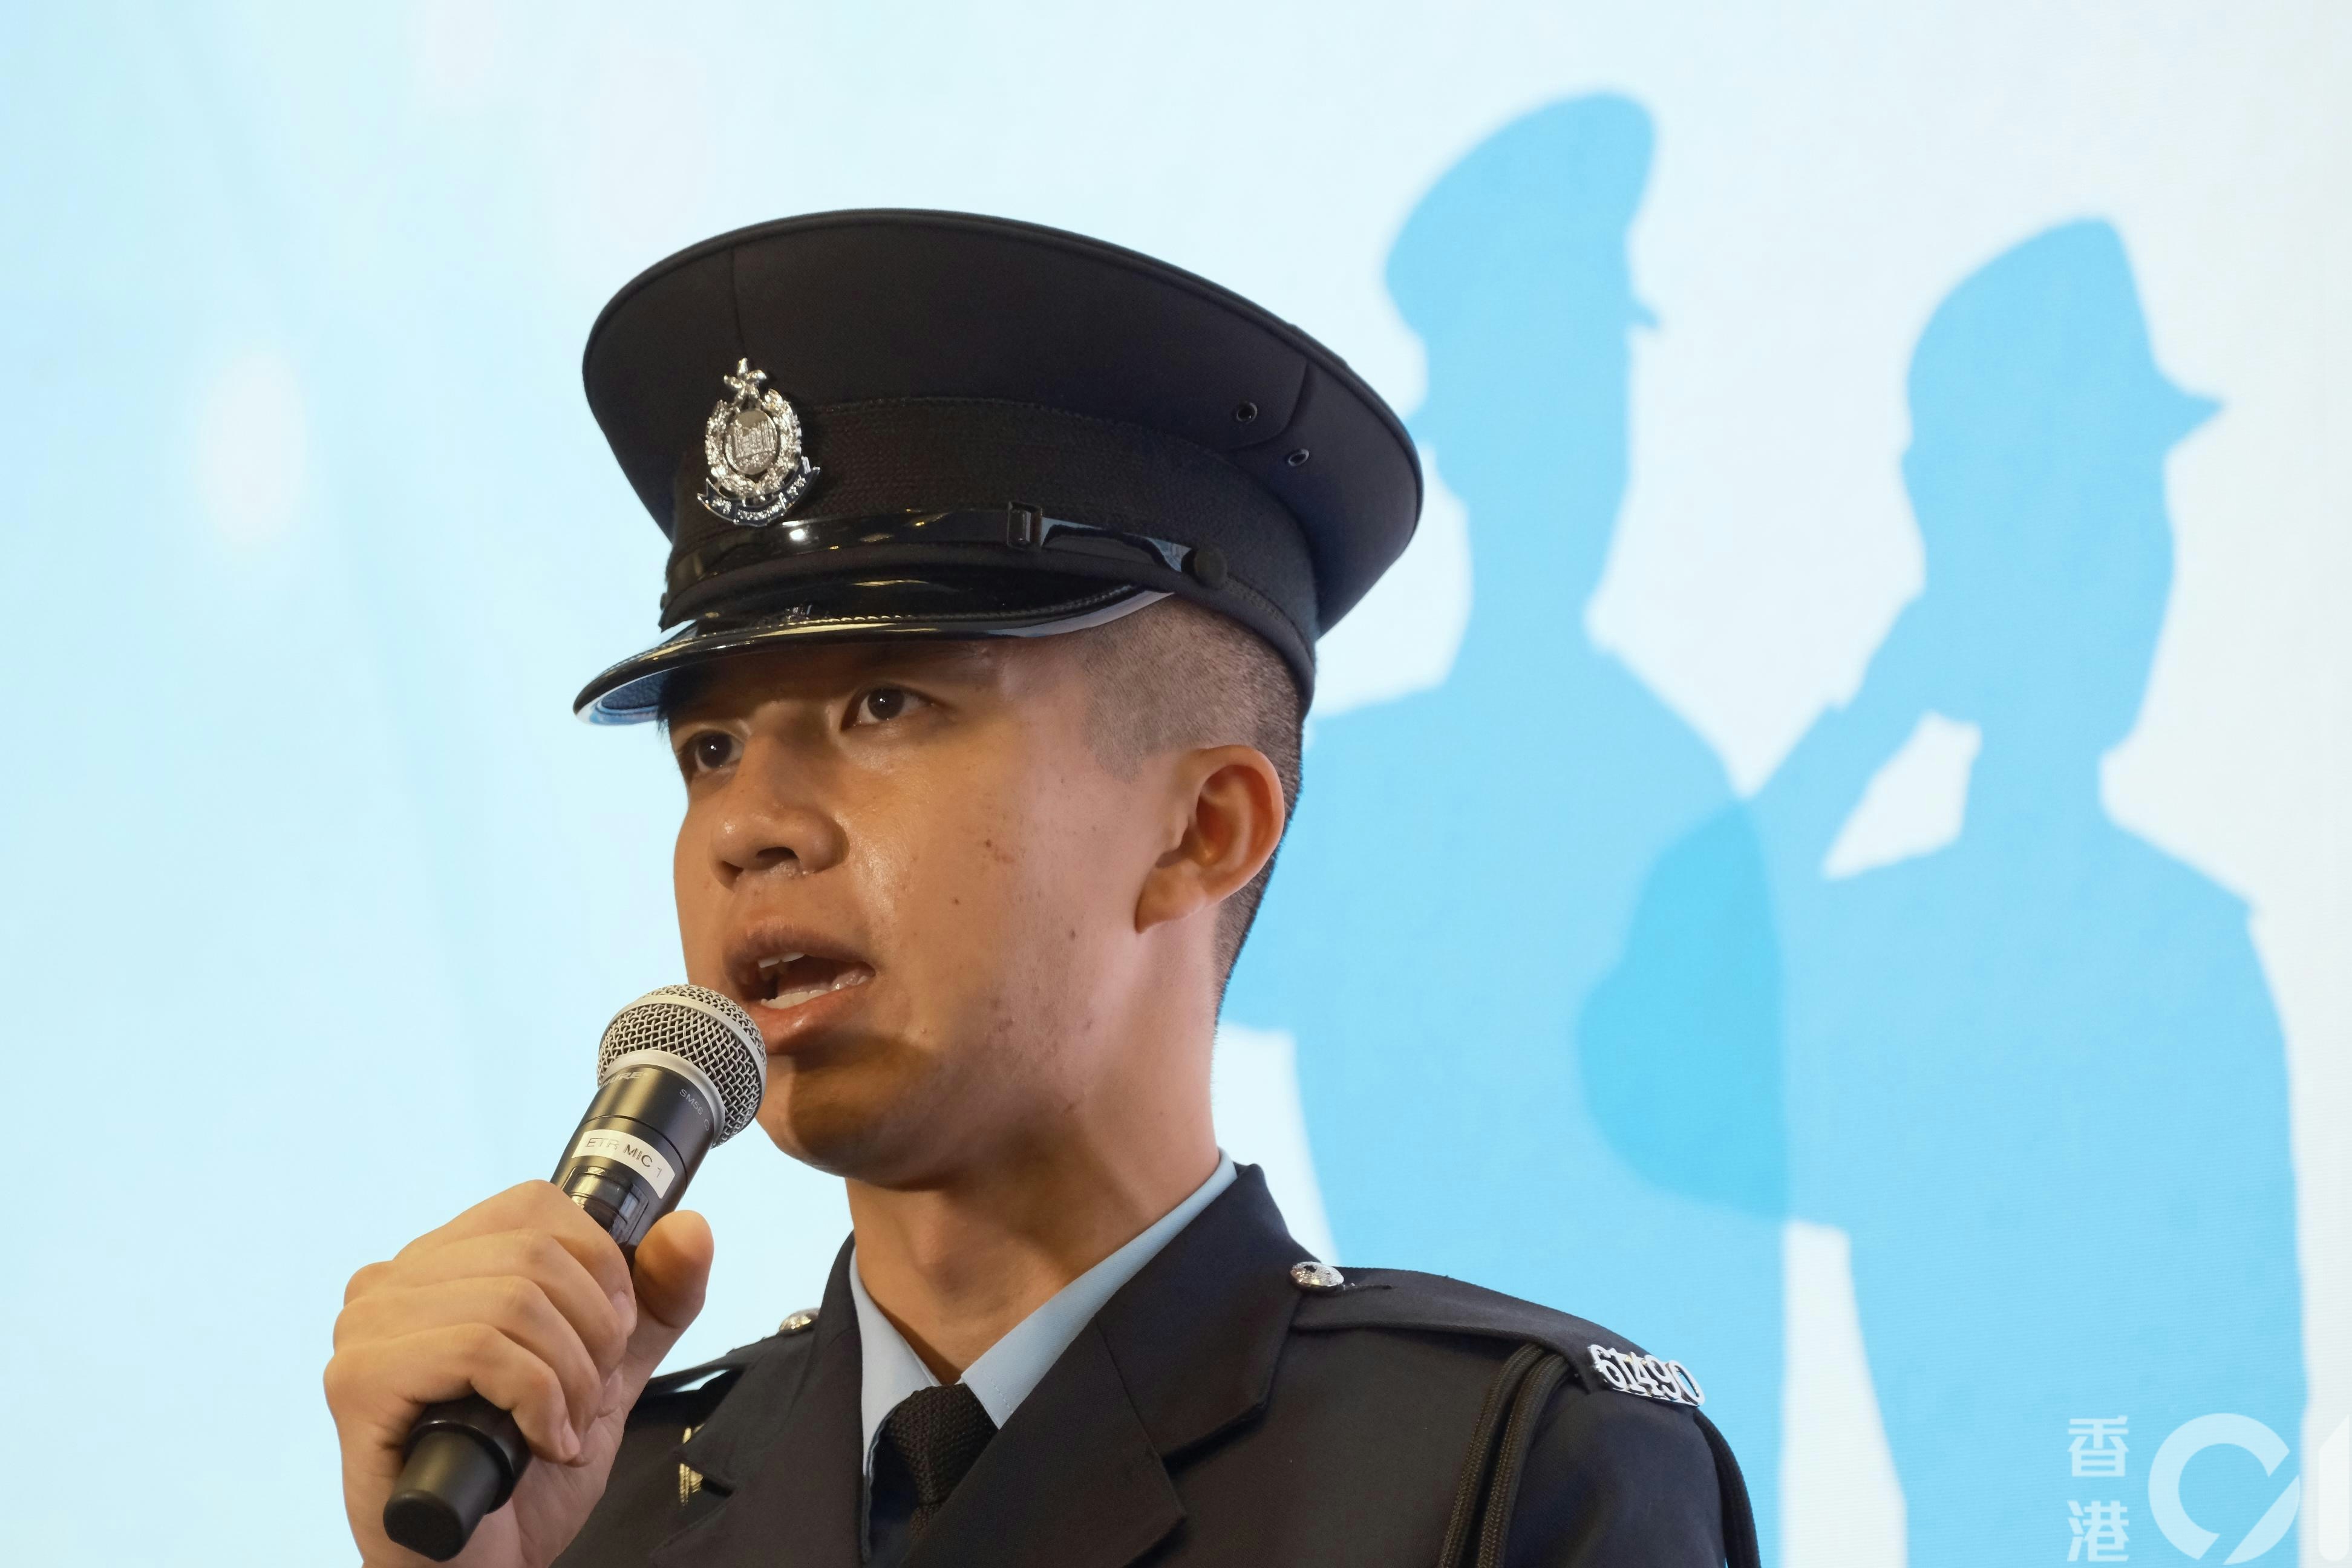 学警尤俊耀由中学手球教练转行成为警察，他认为警察和手球教练的使命一致，都是用生命影响生命。（卢翊铭摄）